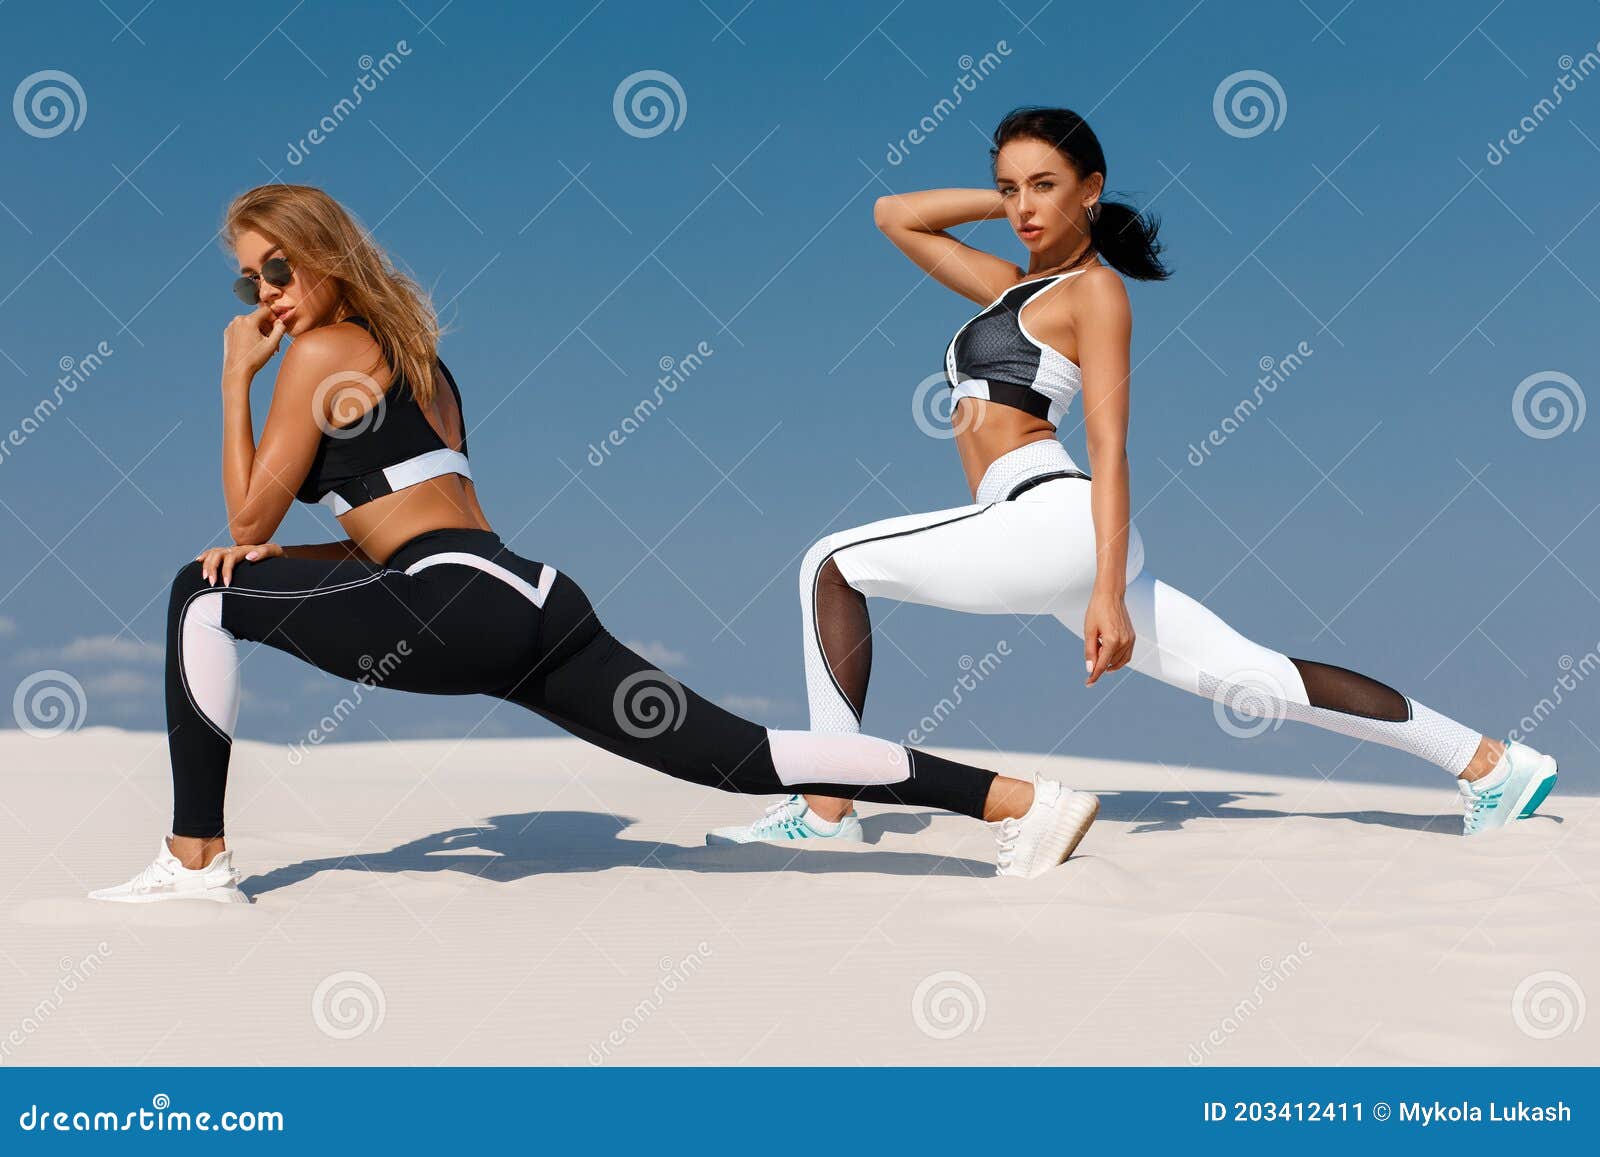 Hermosos Modelos De Fitness En Ropa Deportiva. Pareja De Atléticas En Las  Leggings Al Aire Libre Imagen de archivo - Imagen de hembra, activo:  203412411